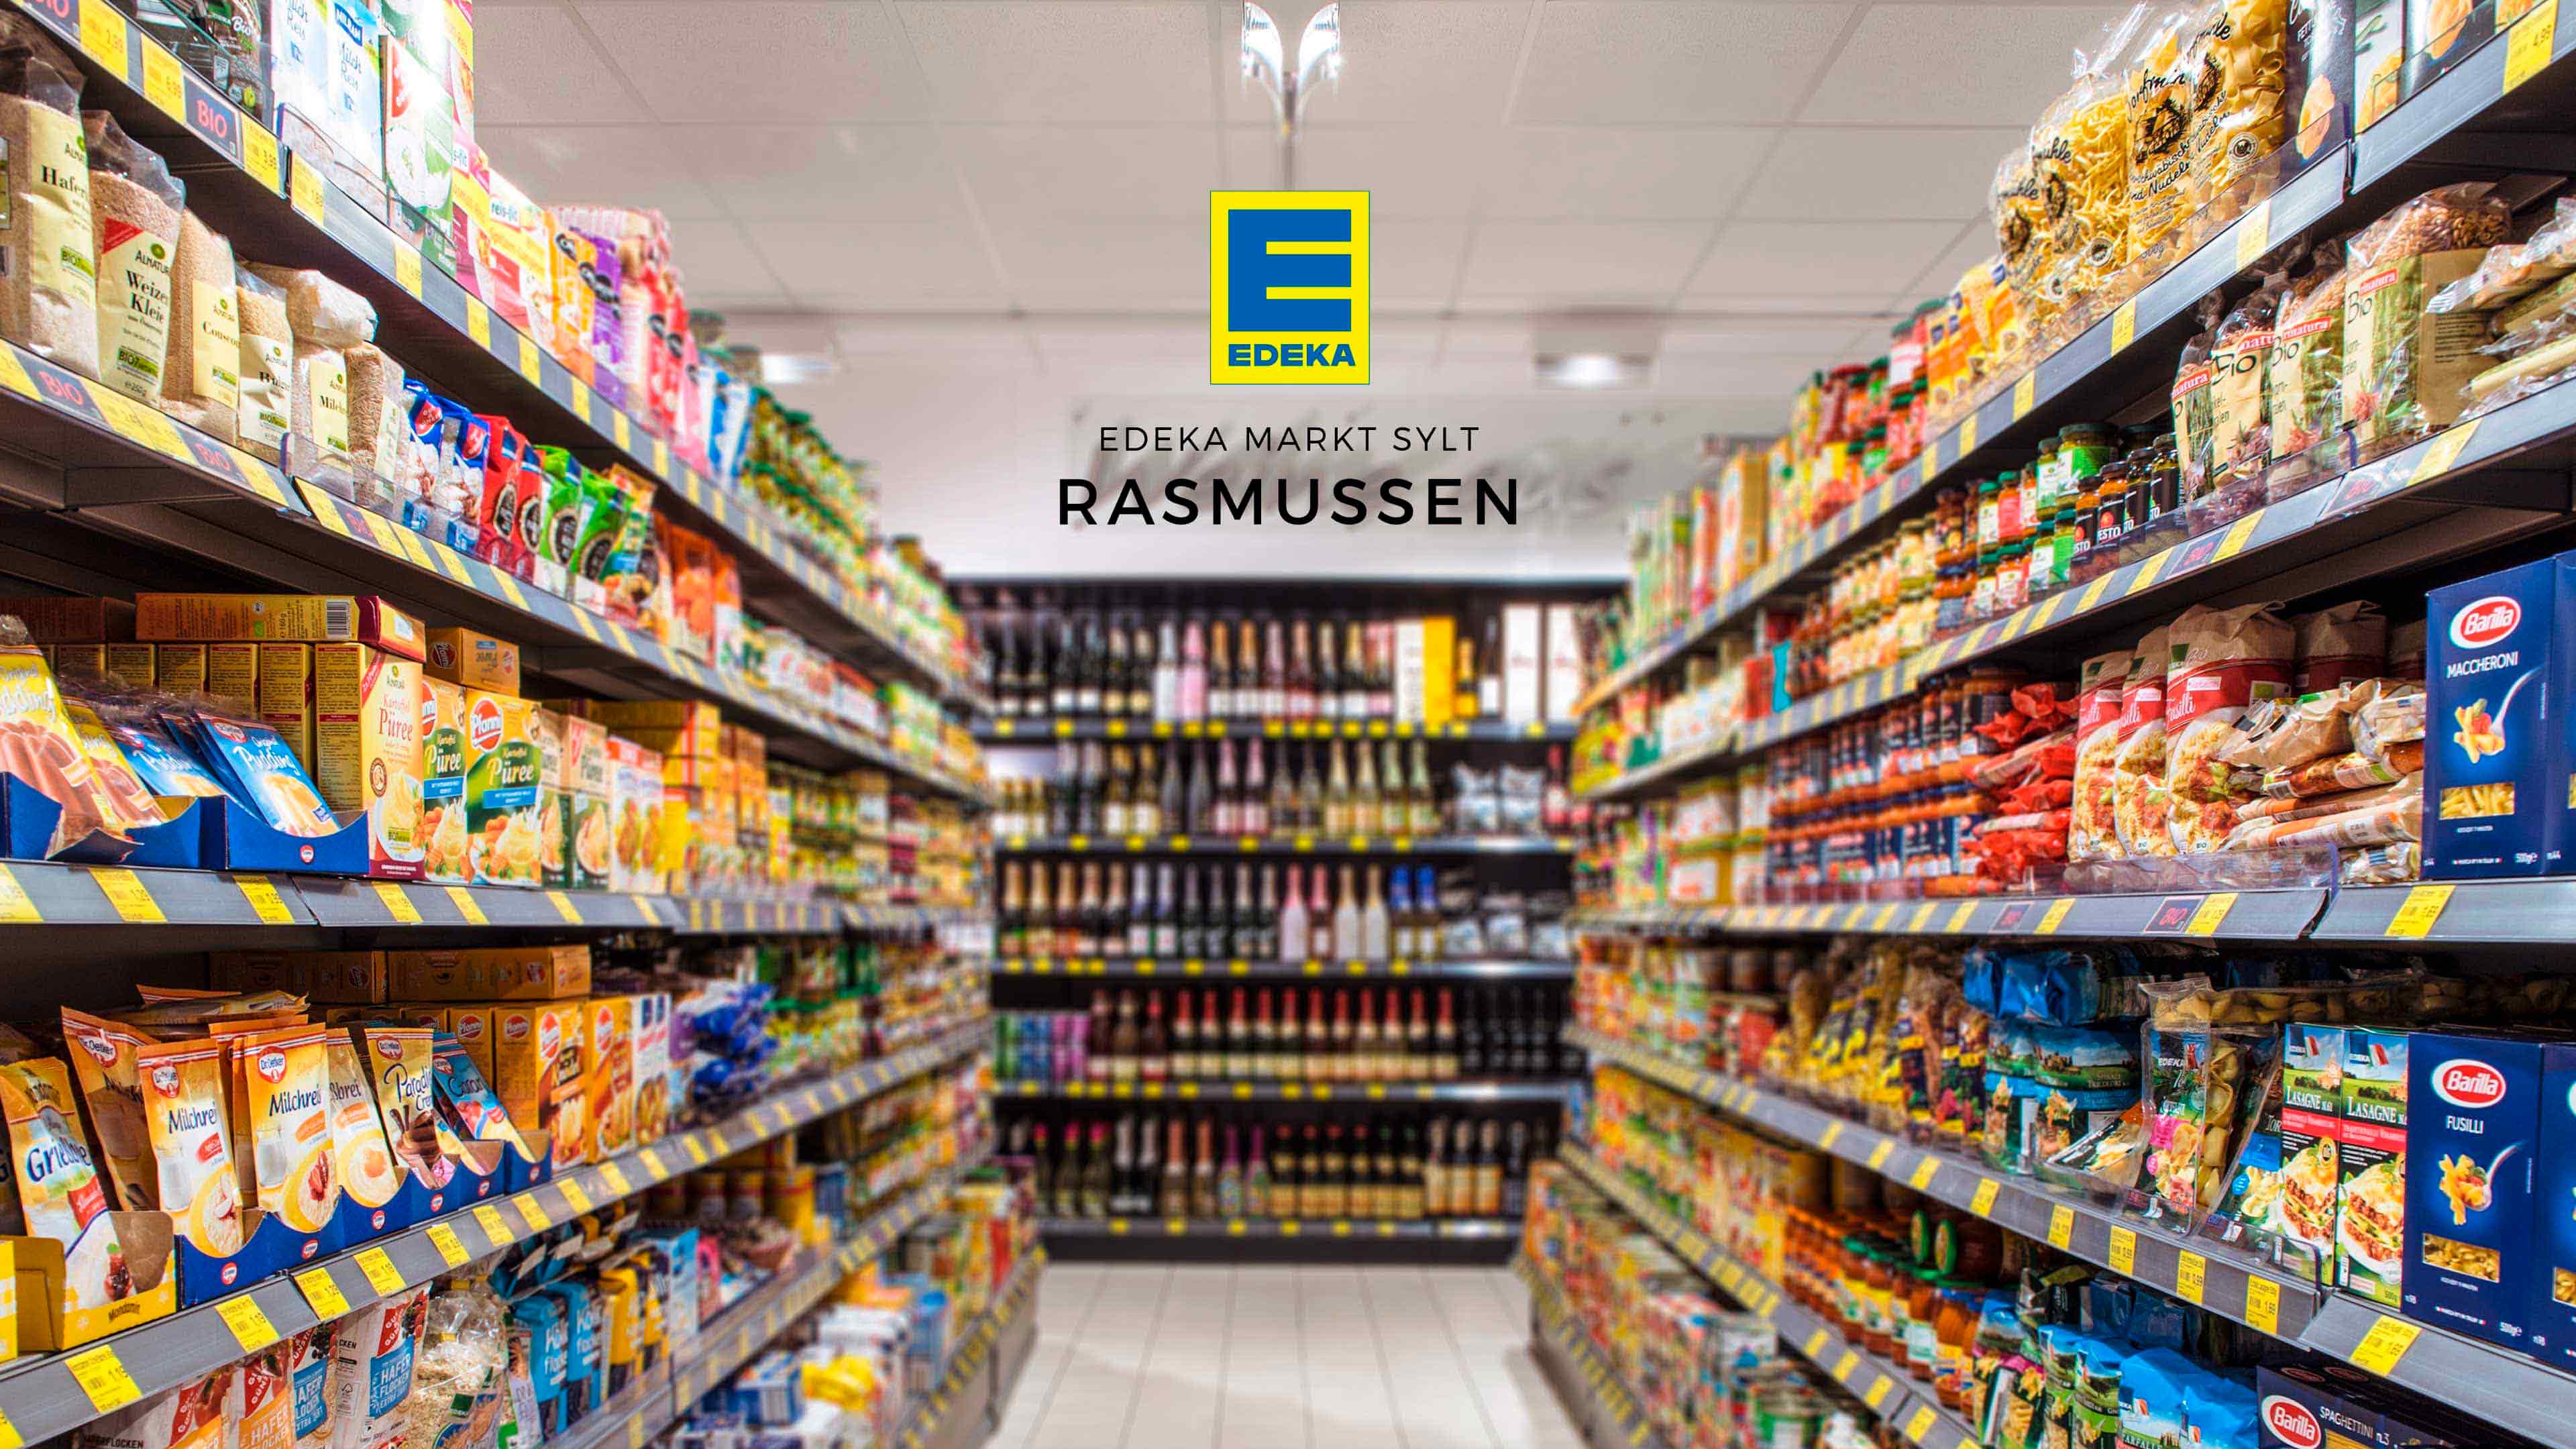 Blick durch Supermarktregale und Logo Edeka Markt Sylt Rasmussen